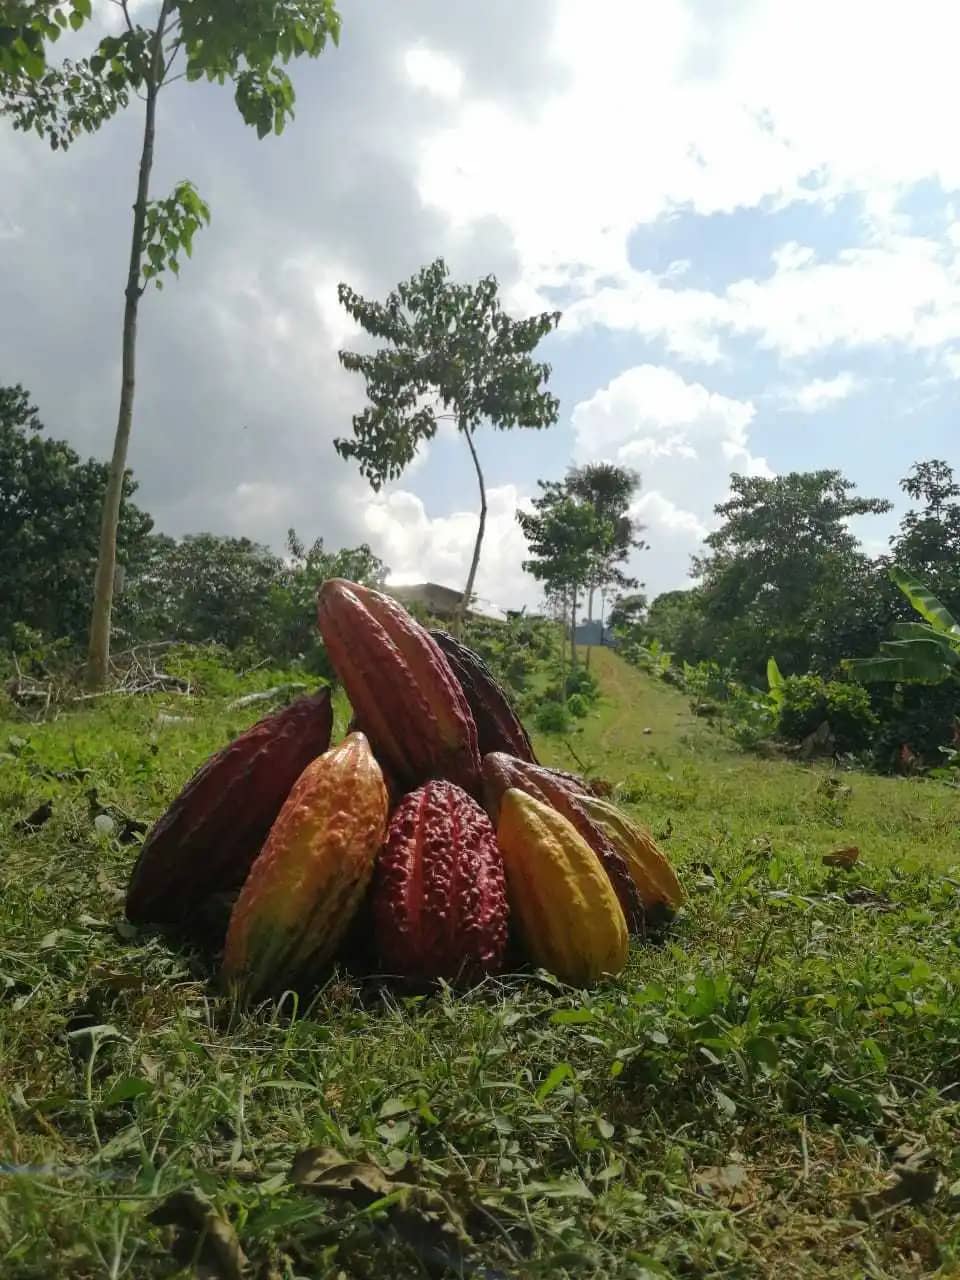 Venta de Cacao en Grano Seco